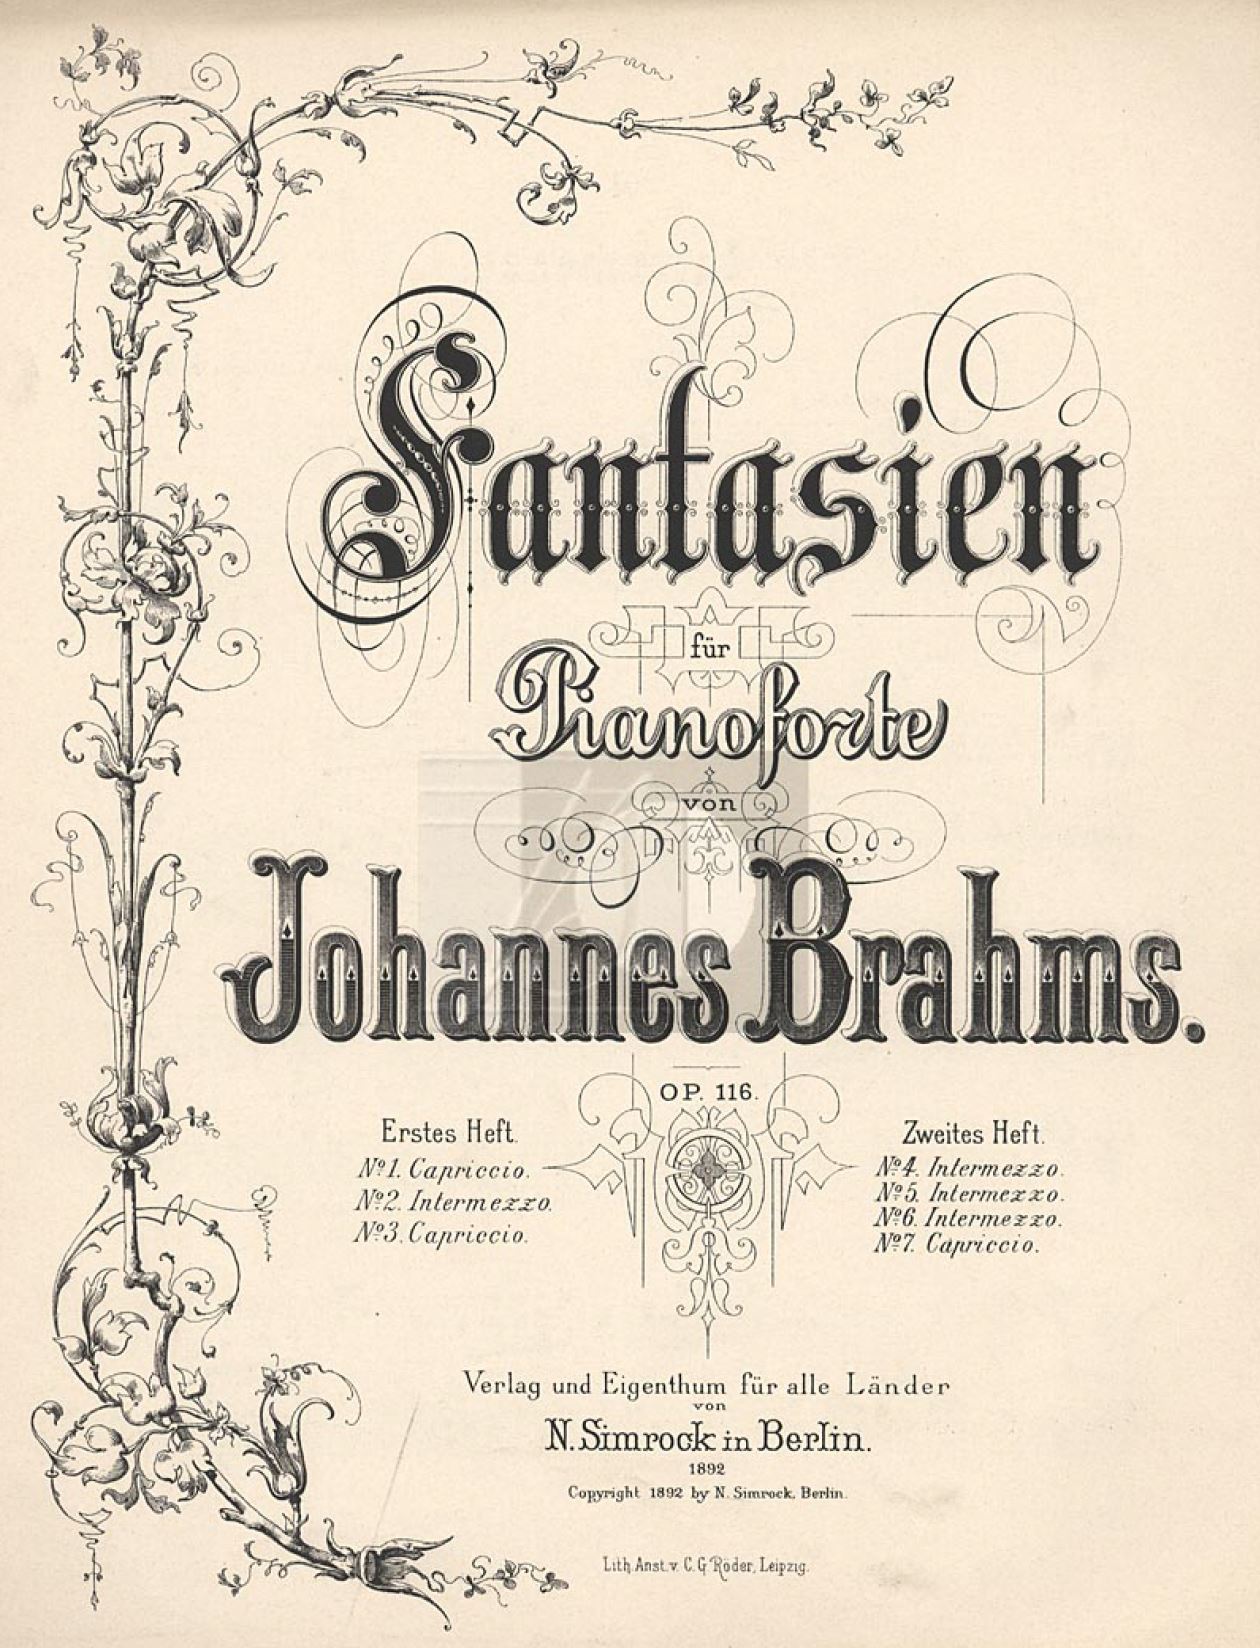 "Brahms Intermezzo in E Major, from Klavierstücke, Op. 116, No. 4," from The Creative Pianist